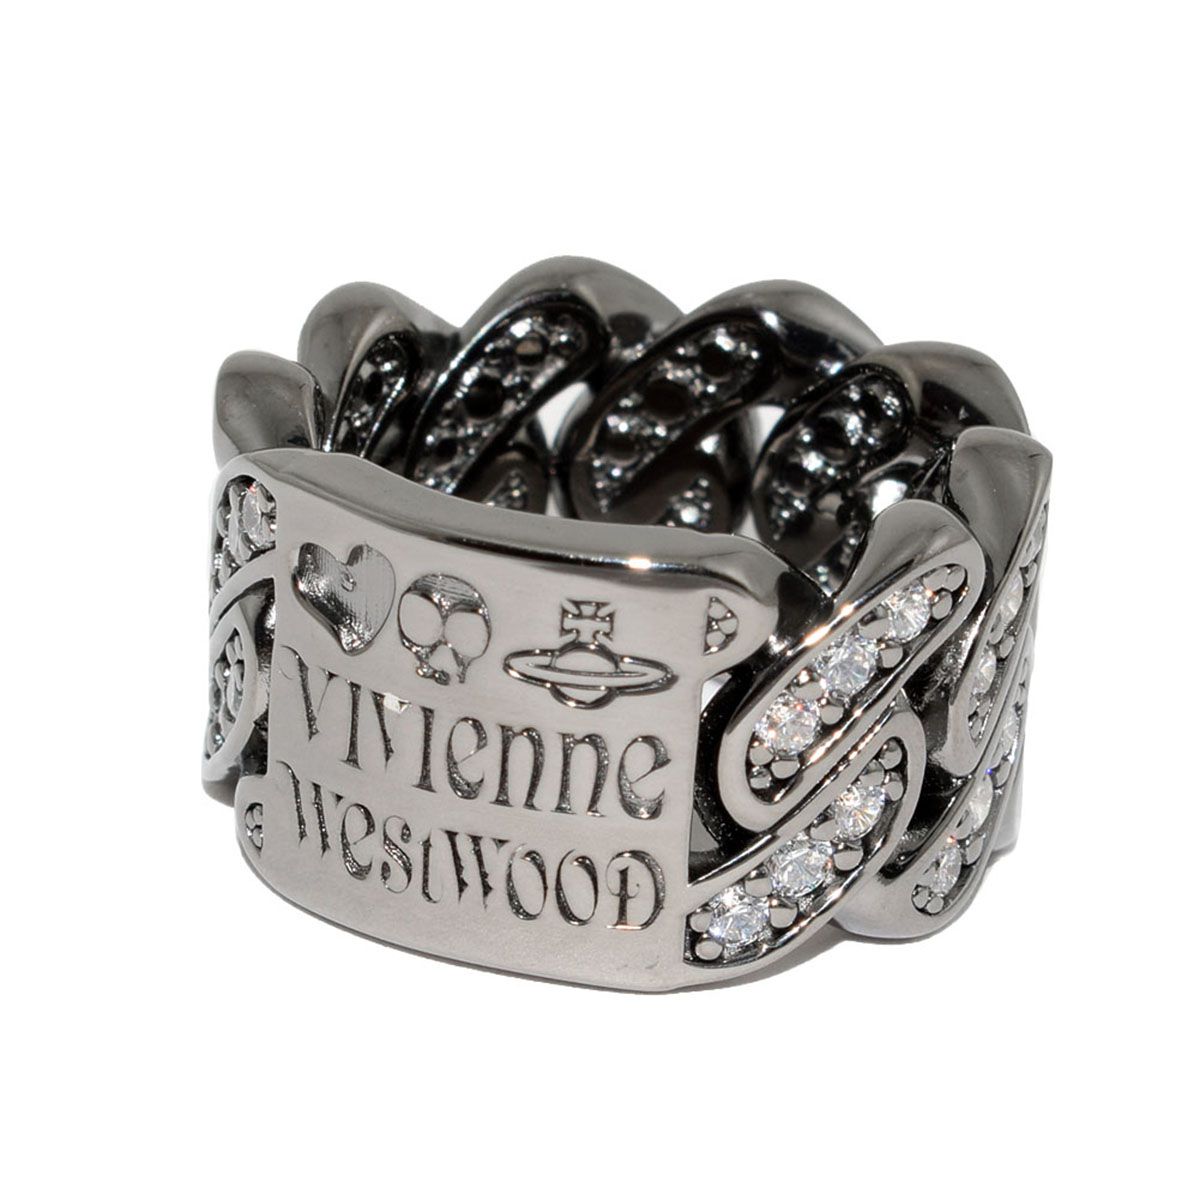 ヴィヴィアン ウエストウッド Vivienne Westwood 指輪 リング ROY RING アクセサリー ガンメタル ギフト プレゼント クリスマス 誕生日 6